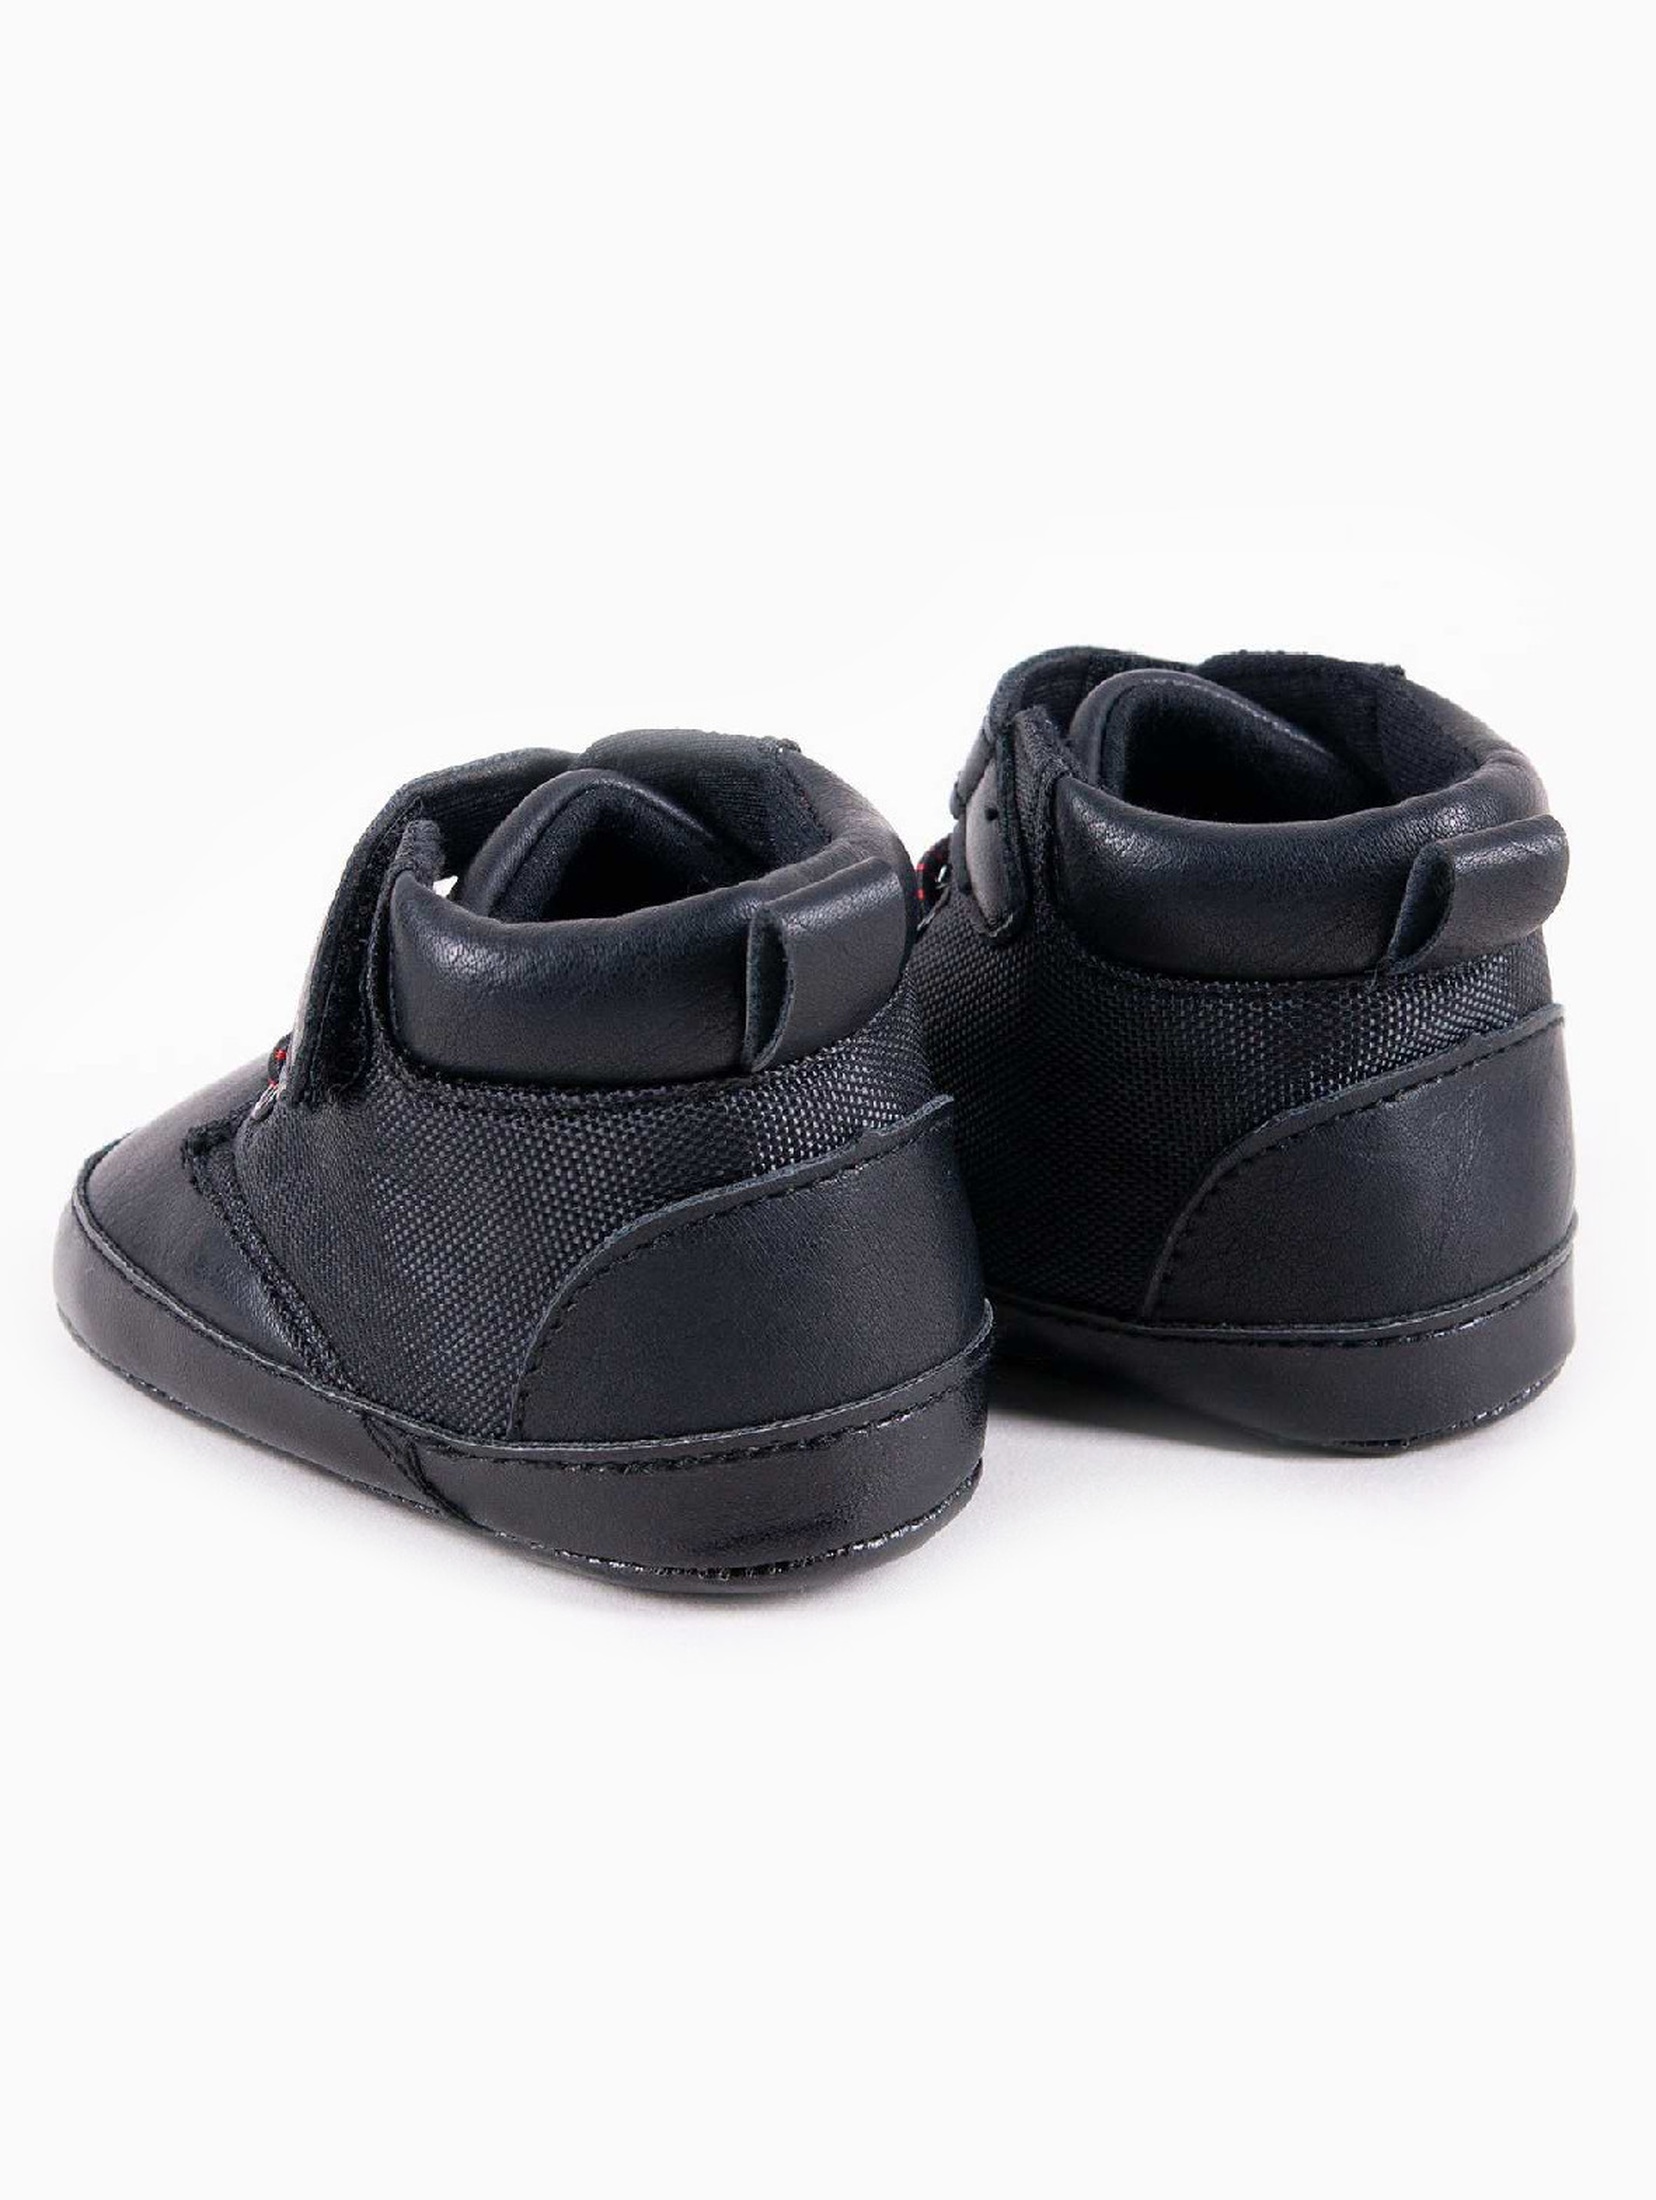 Czarne buciki przejściowe dla niemowlaka